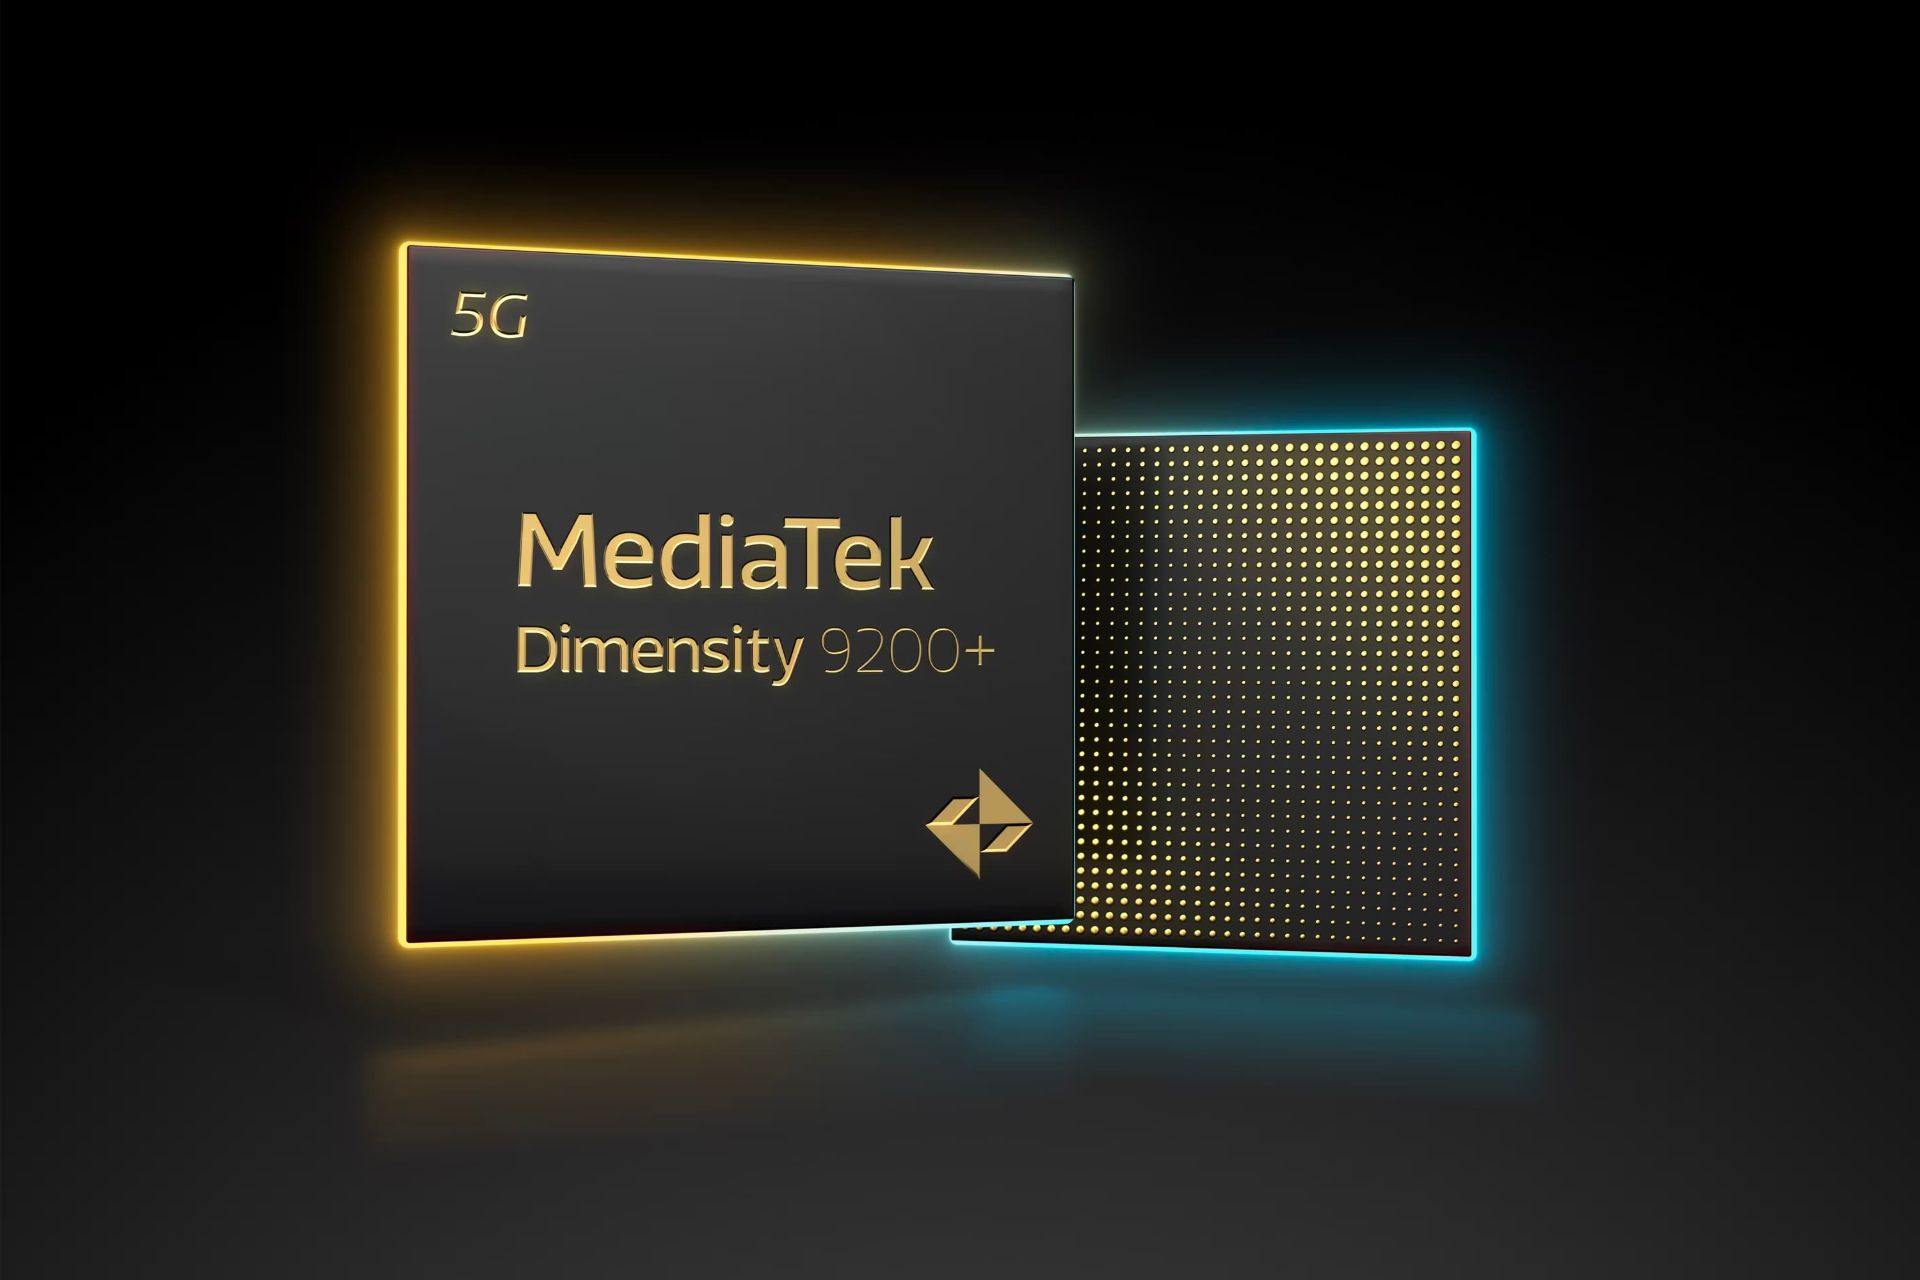 پردازنده دایمنسیتی ۹۲۰۰ پلاس / Dimensity 9200+ مدیاتک